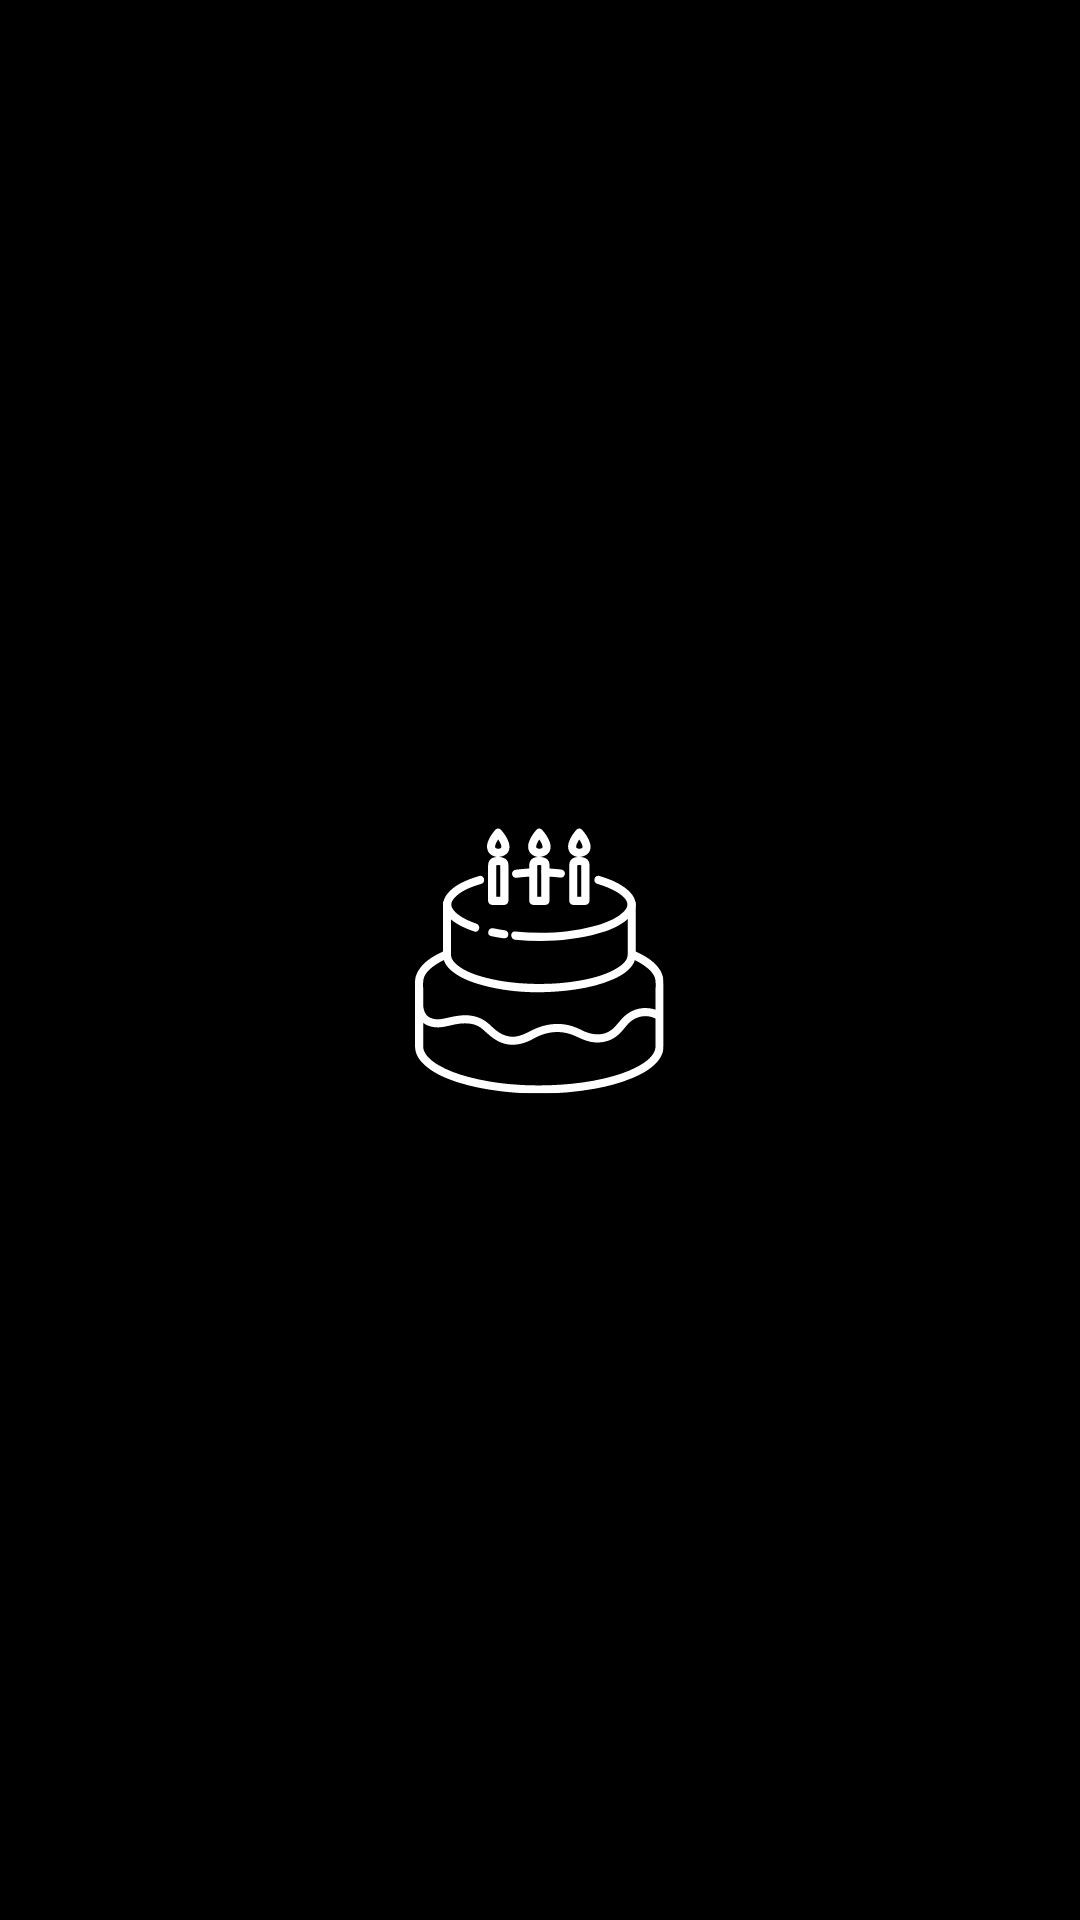 Happy birthday instagram story highlight cover black white